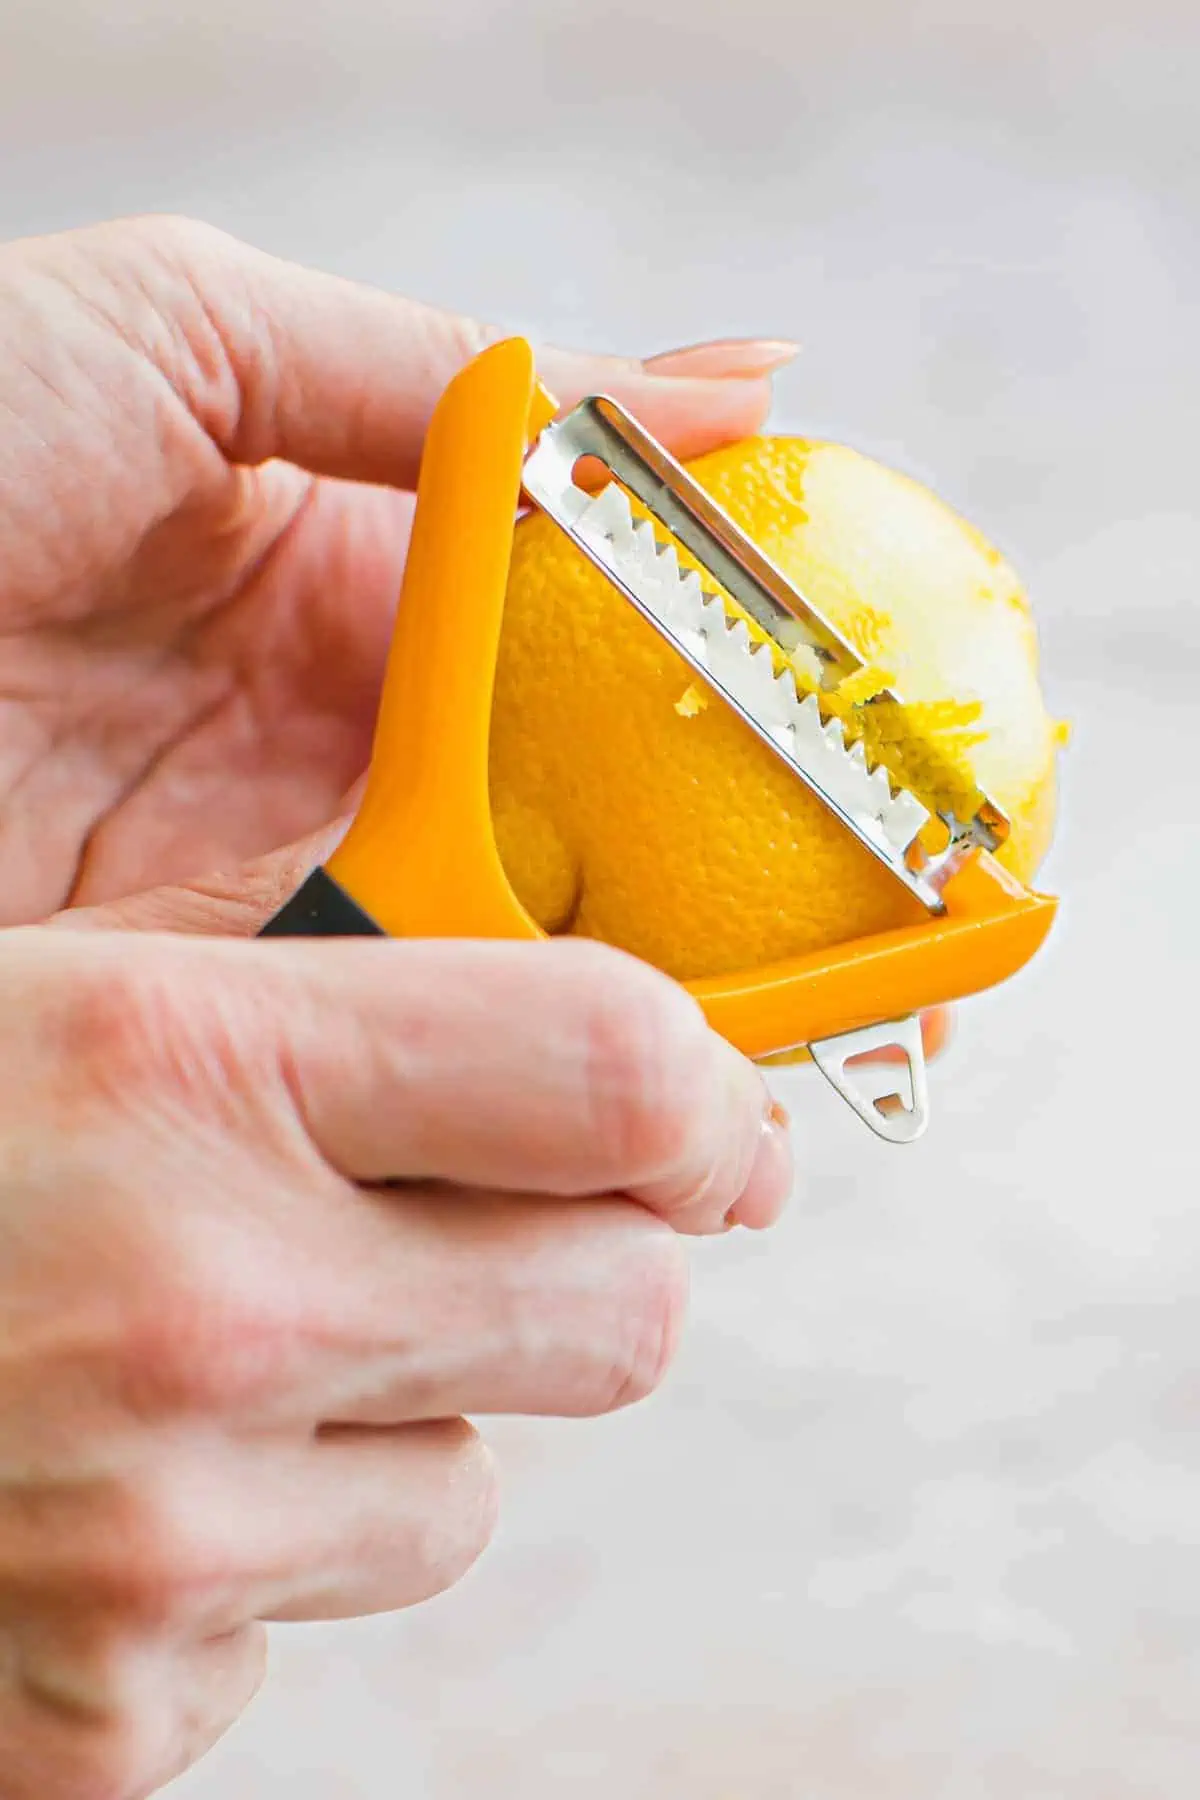 Zesting a lemon using a julienne peeler.